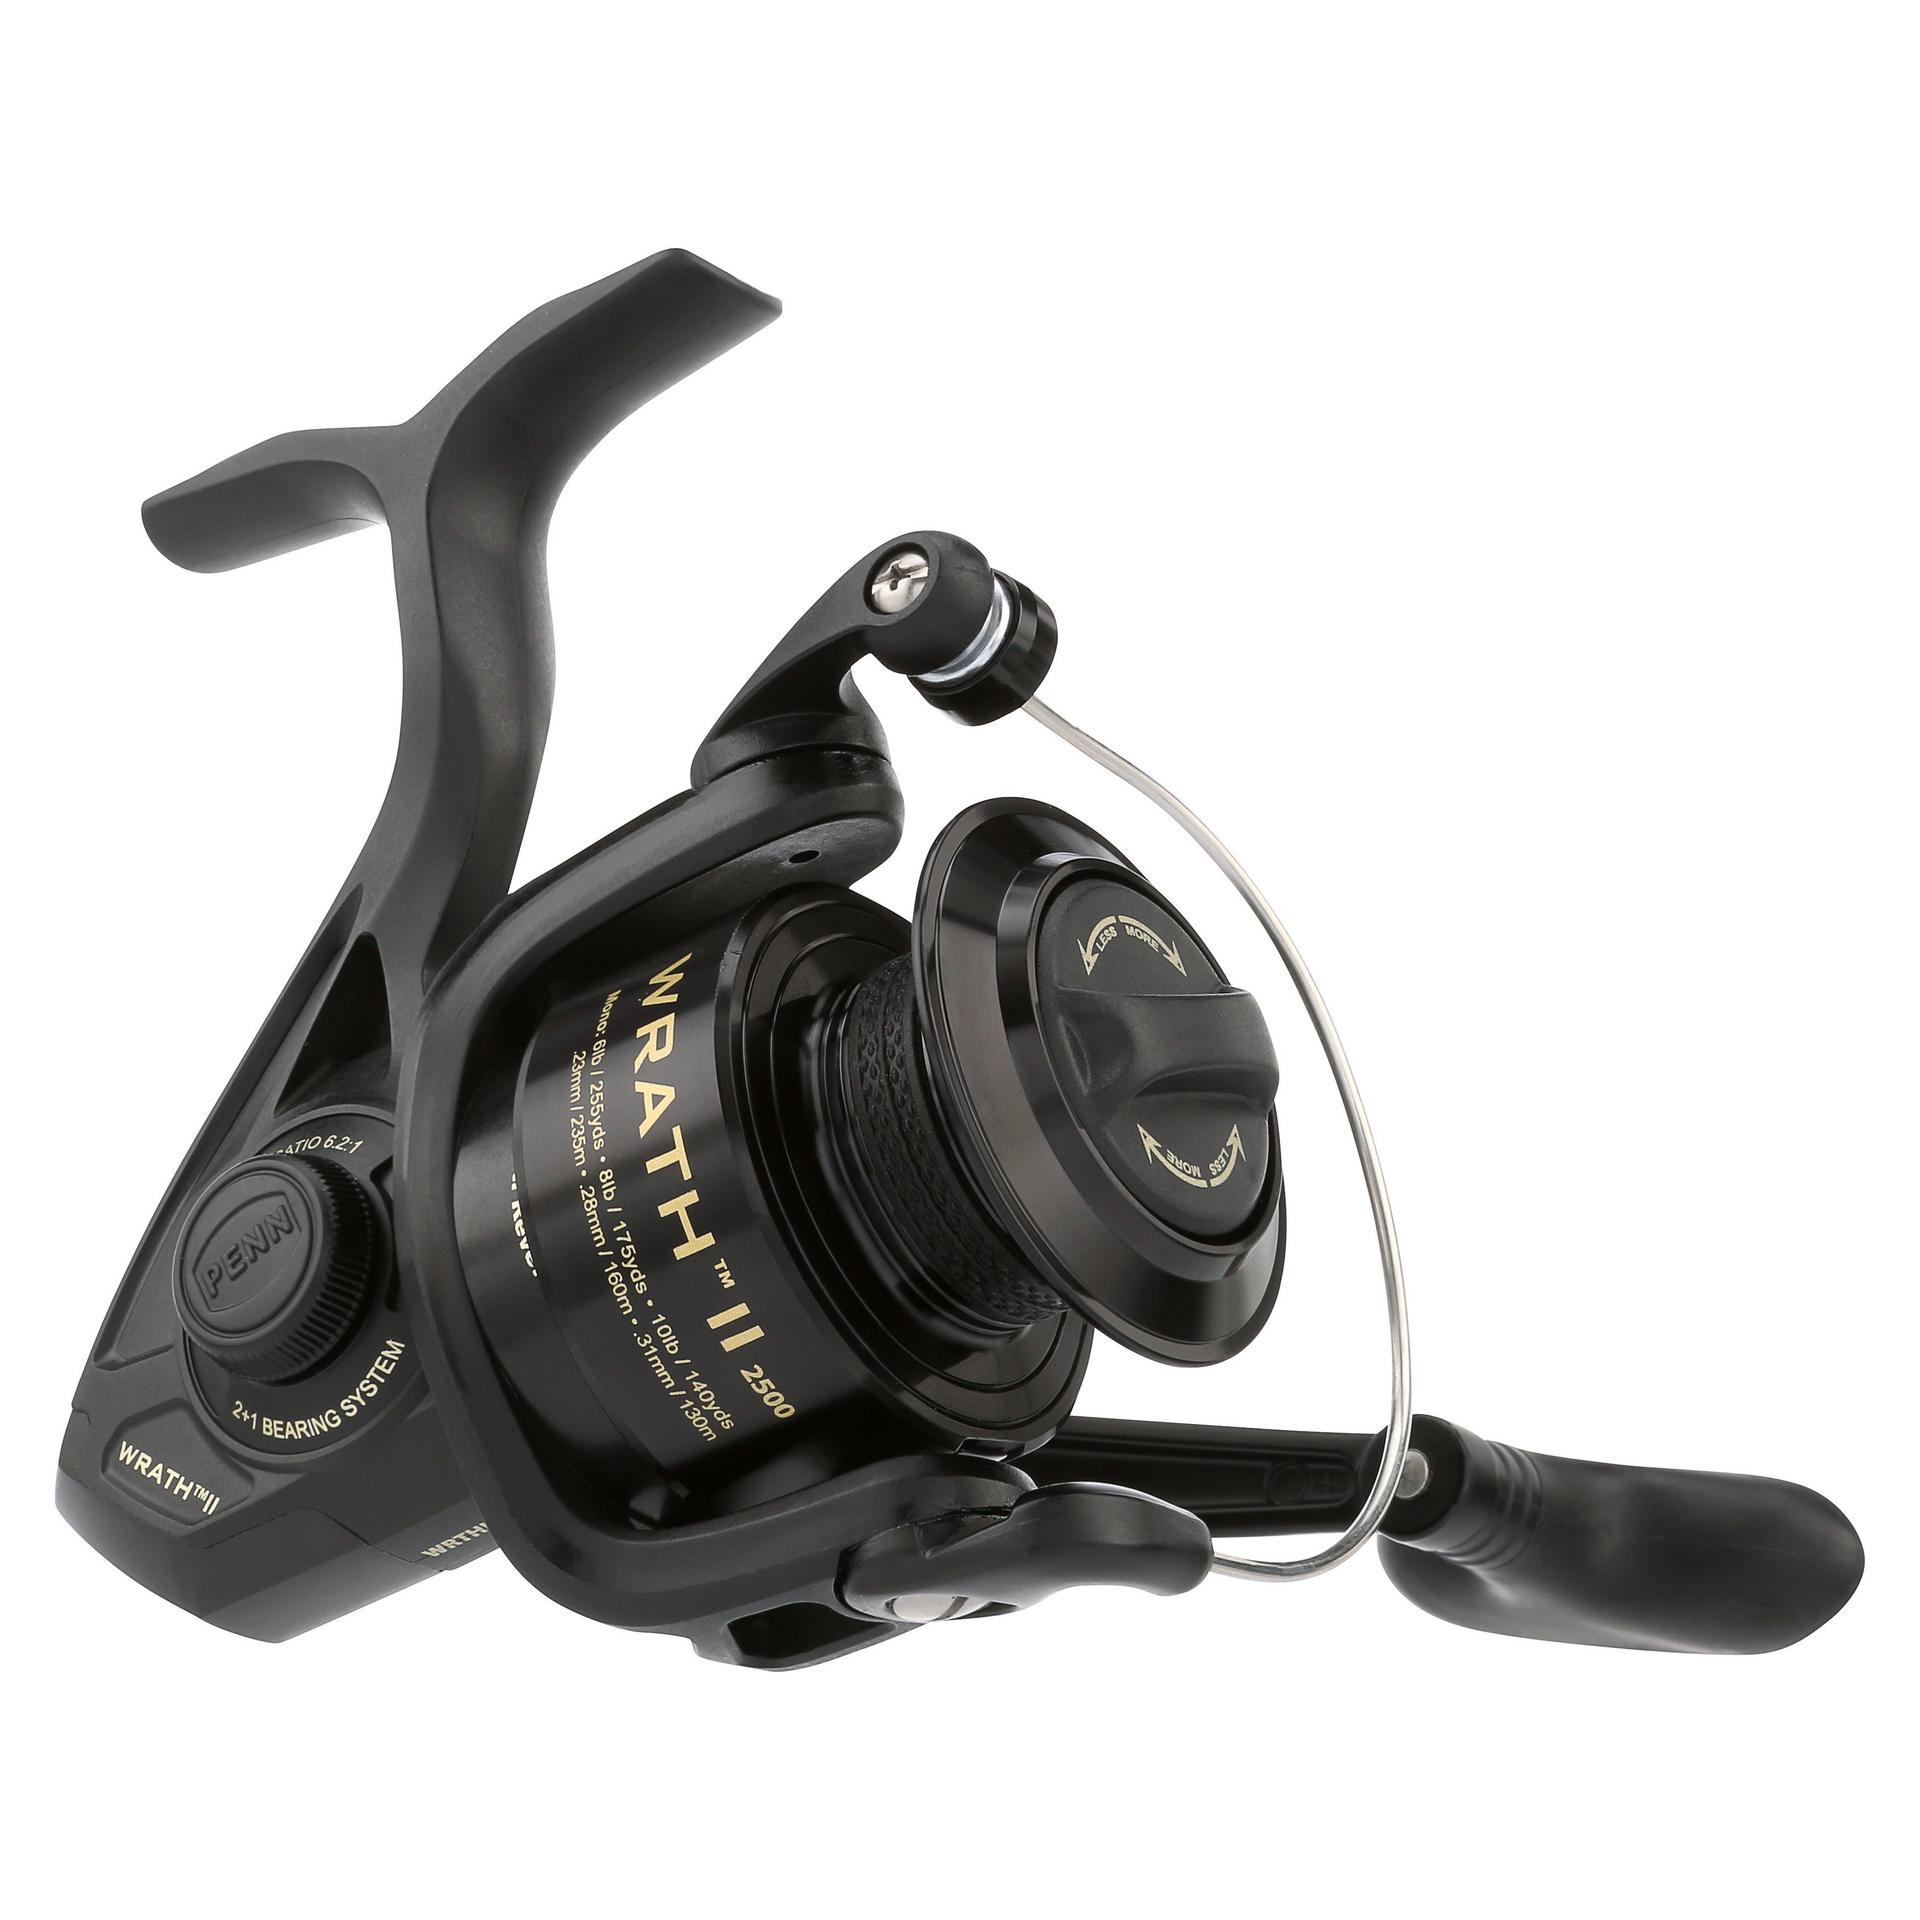 Clearance - Penn BATTLE II 5000 Spin Fishing Spin Reel + Warranty  31324160170